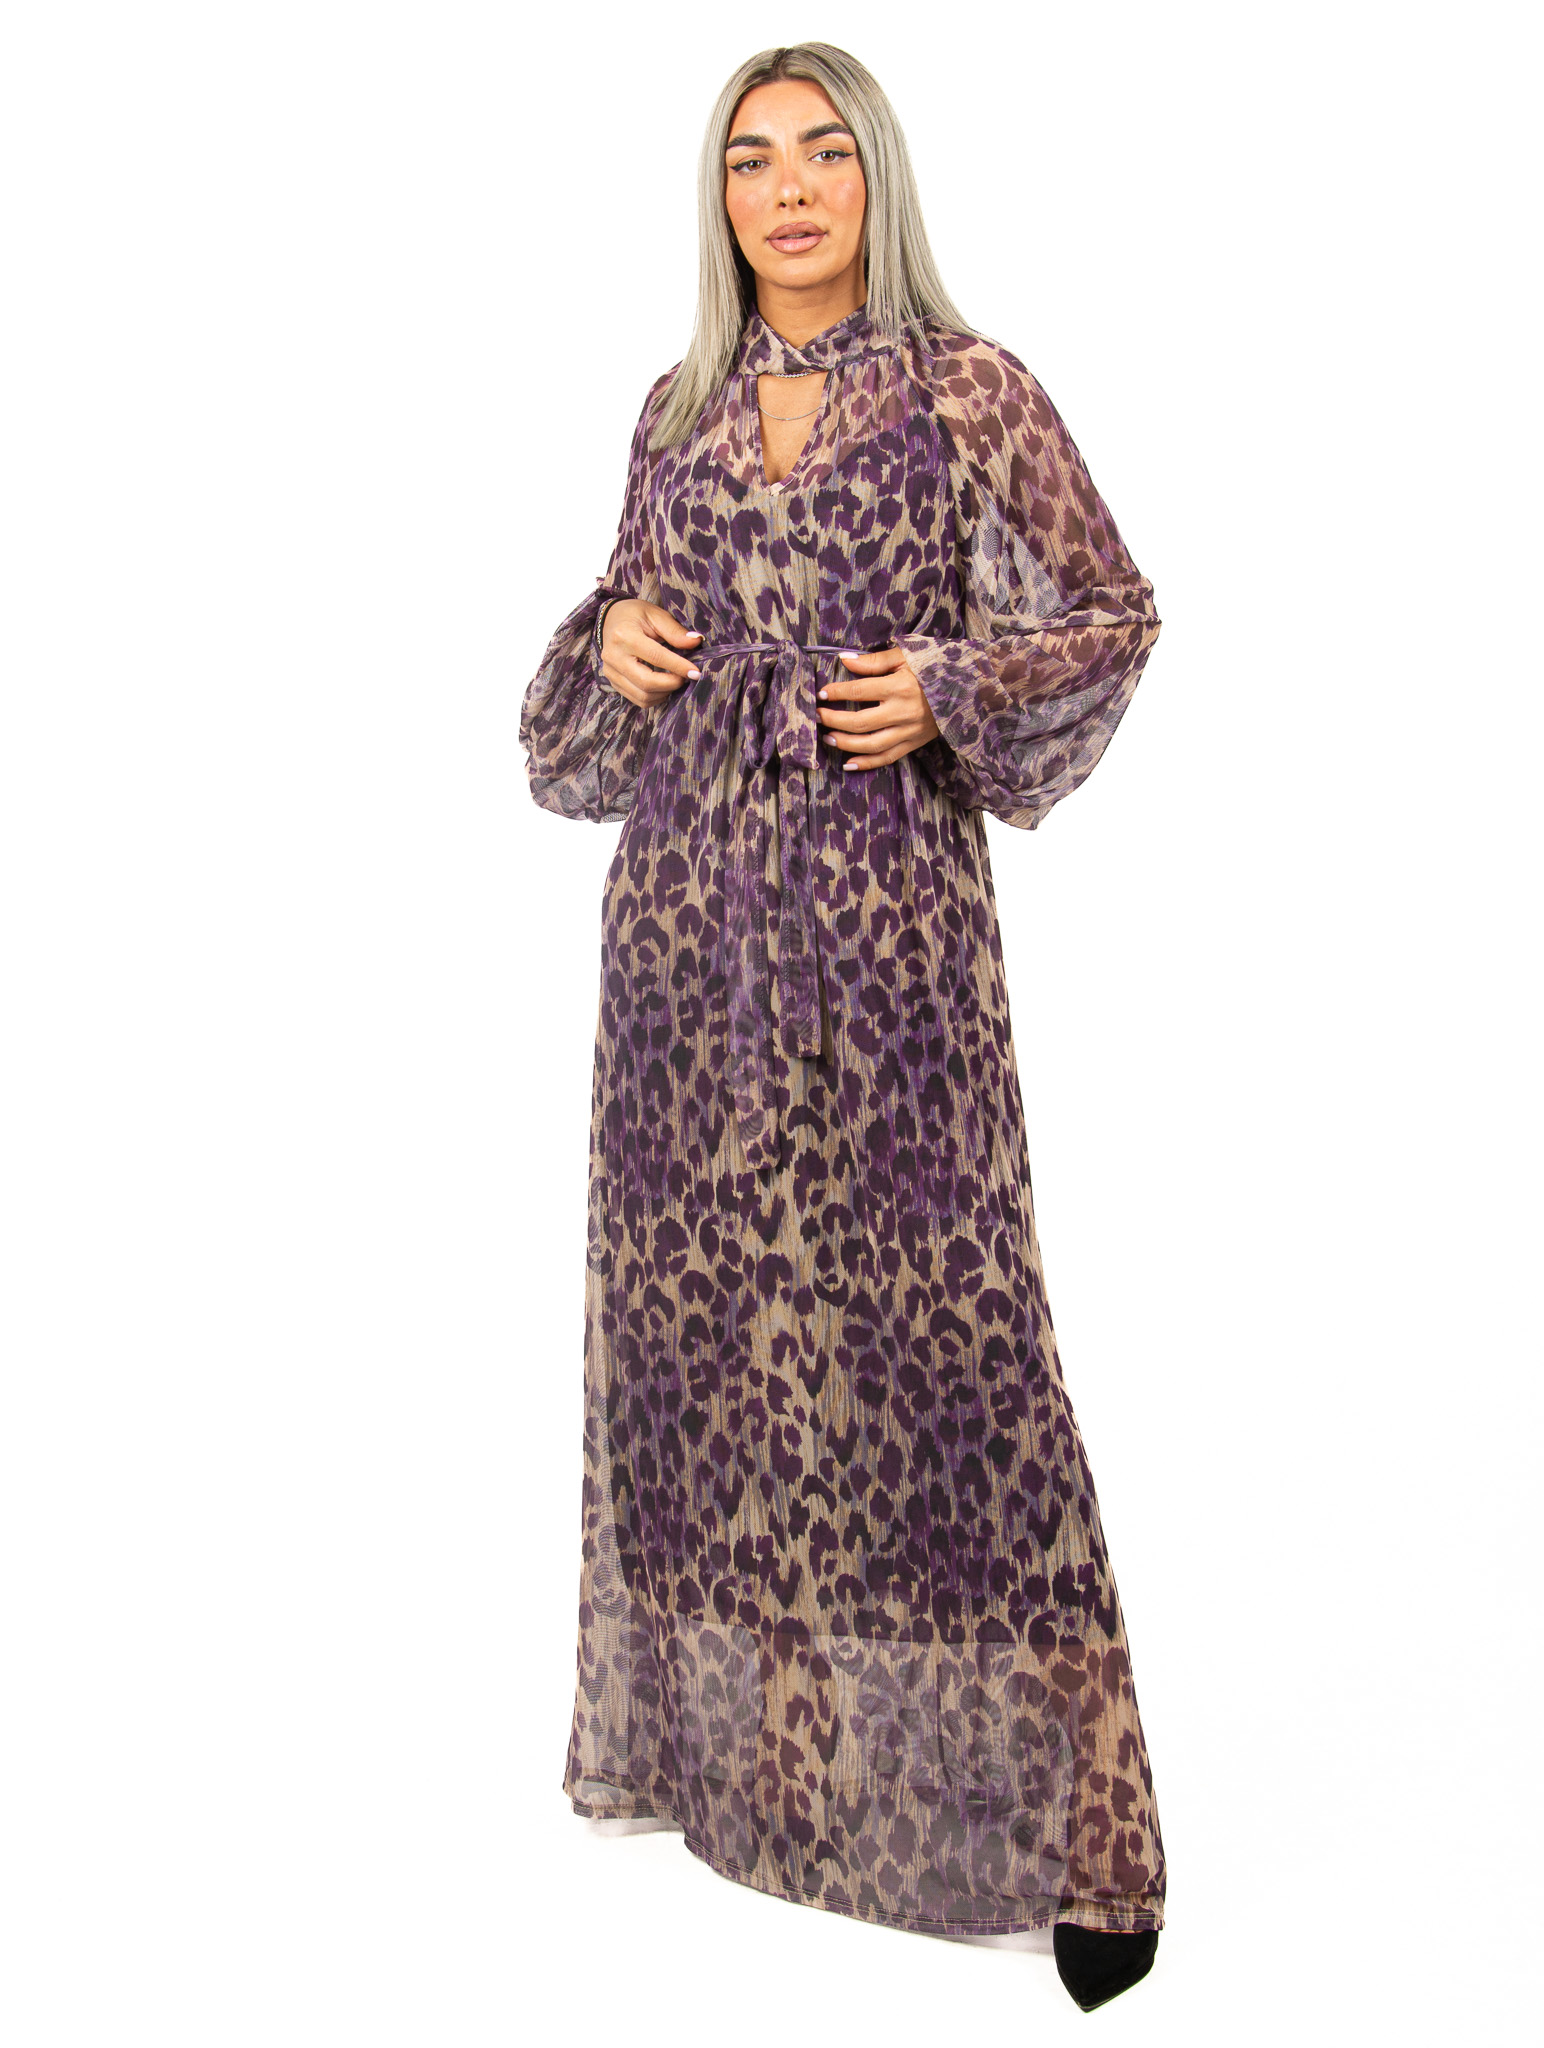 Φόρεμα Σιφόν Leopard Mωβ | EllenBoutique